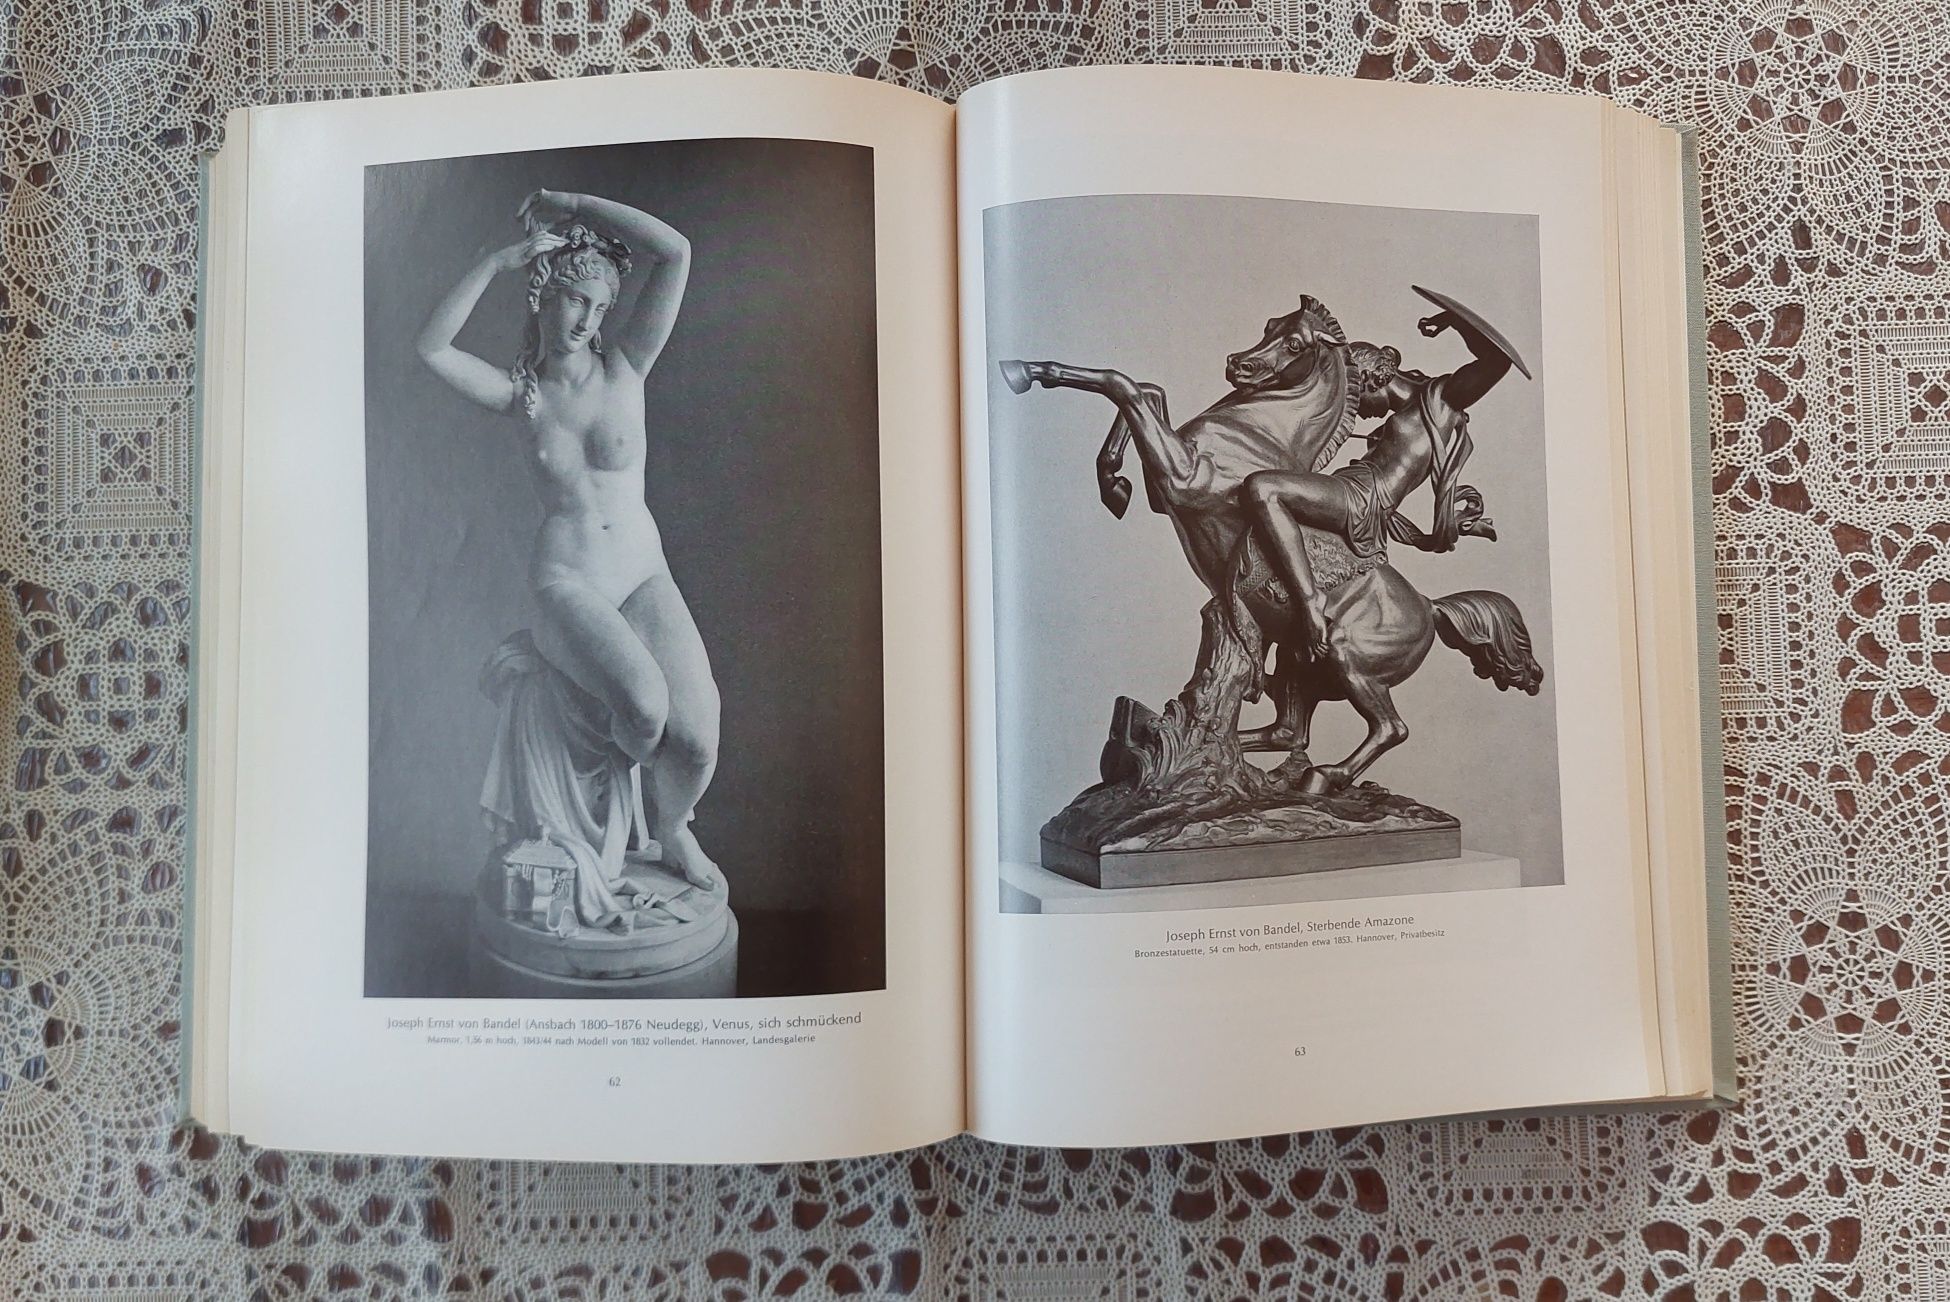 Rzeźba niemiecka od początków do współczesności - książka